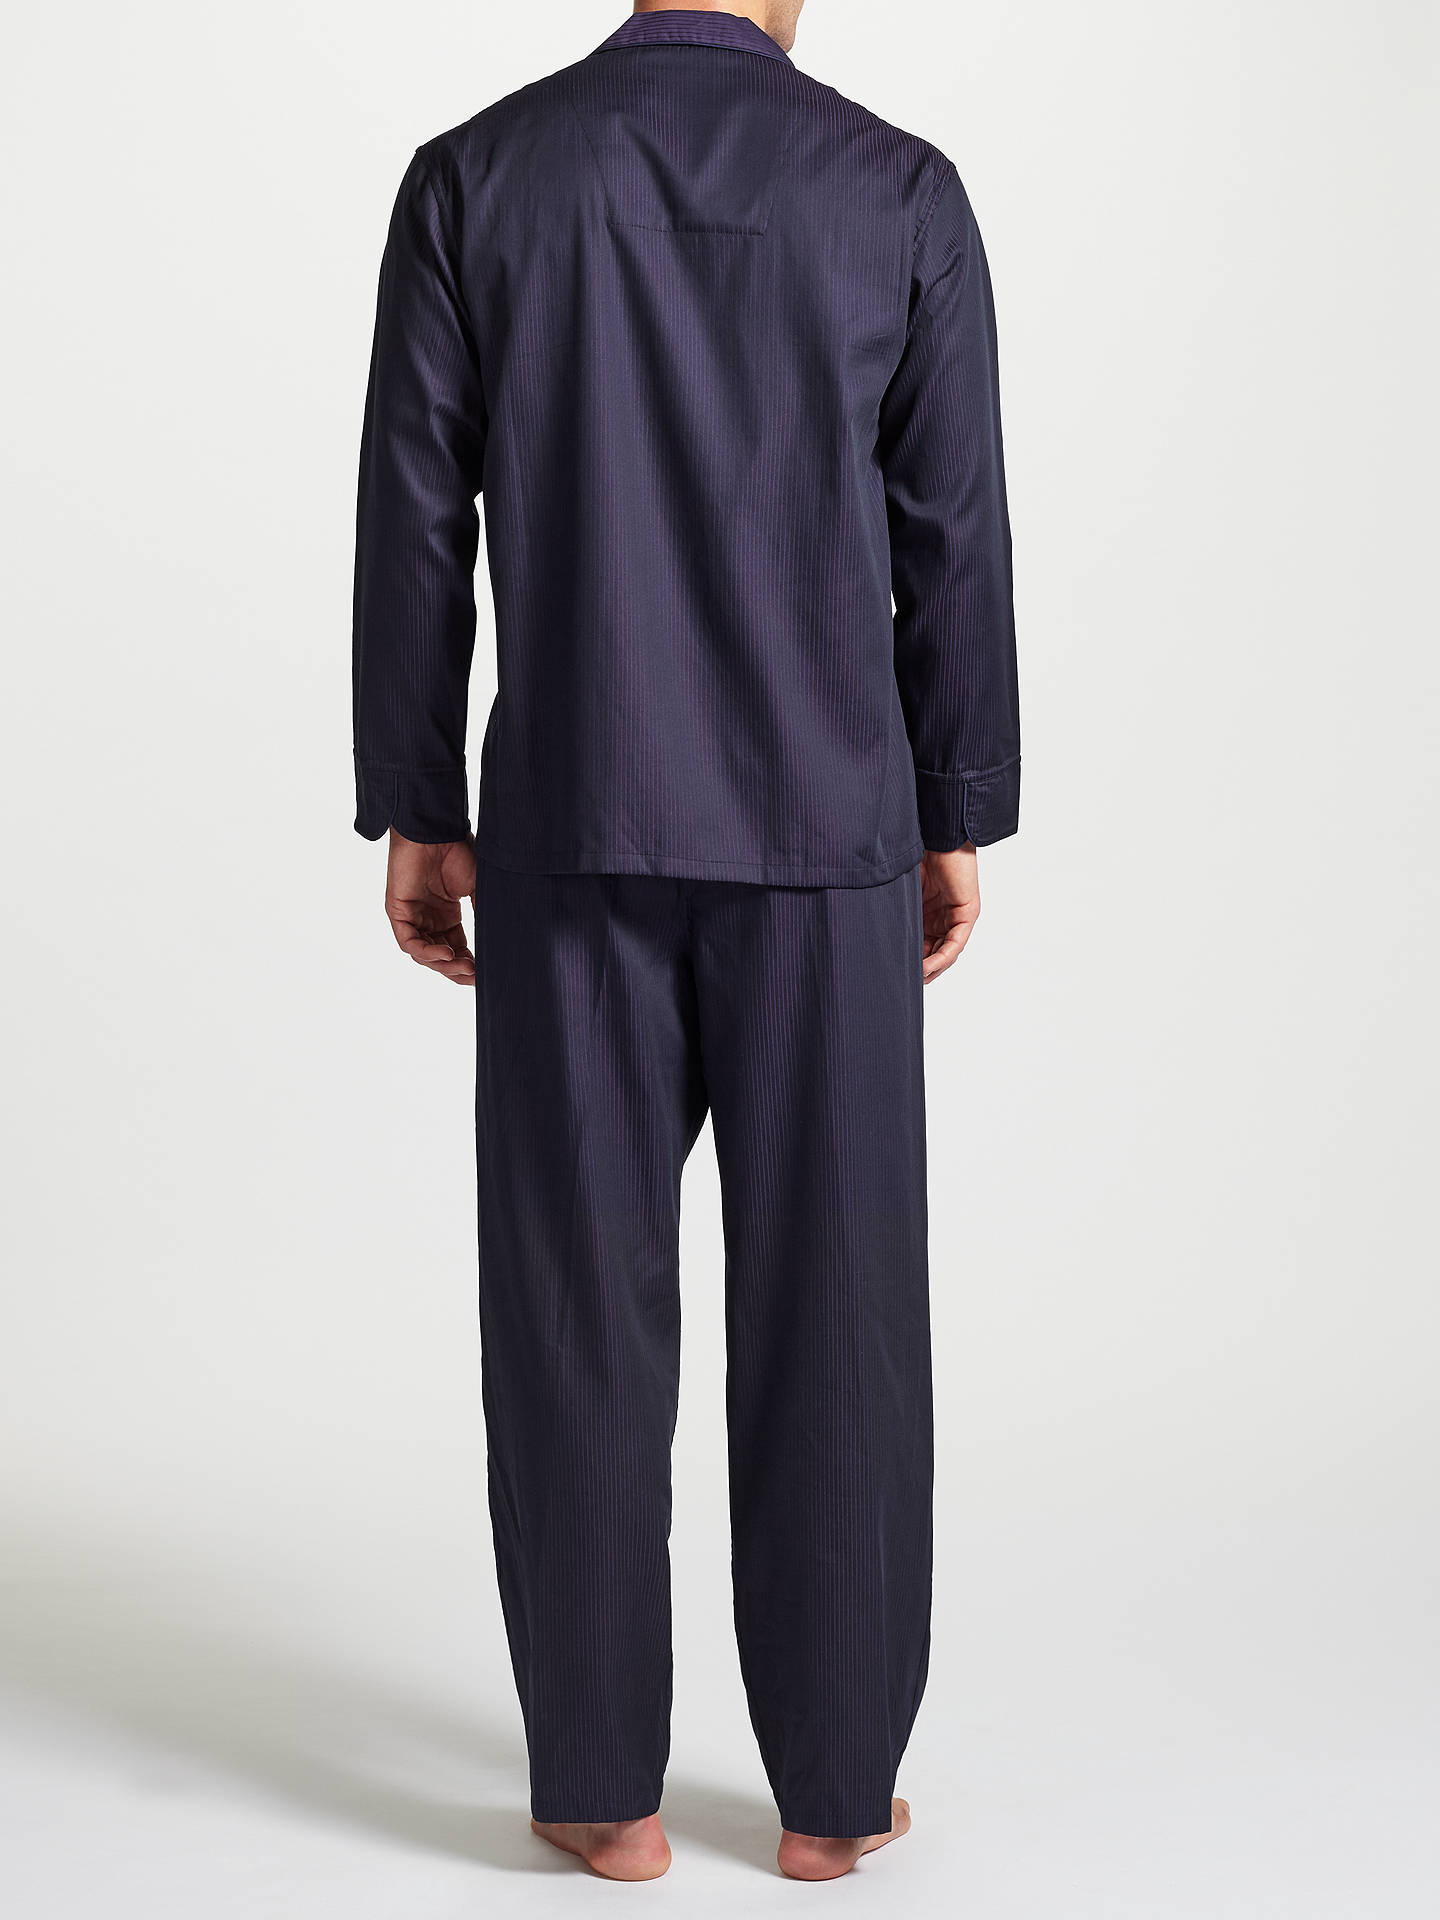 John Lewis Premium Satin Stripe Pyjamas, Purple at John Lewis & Partners